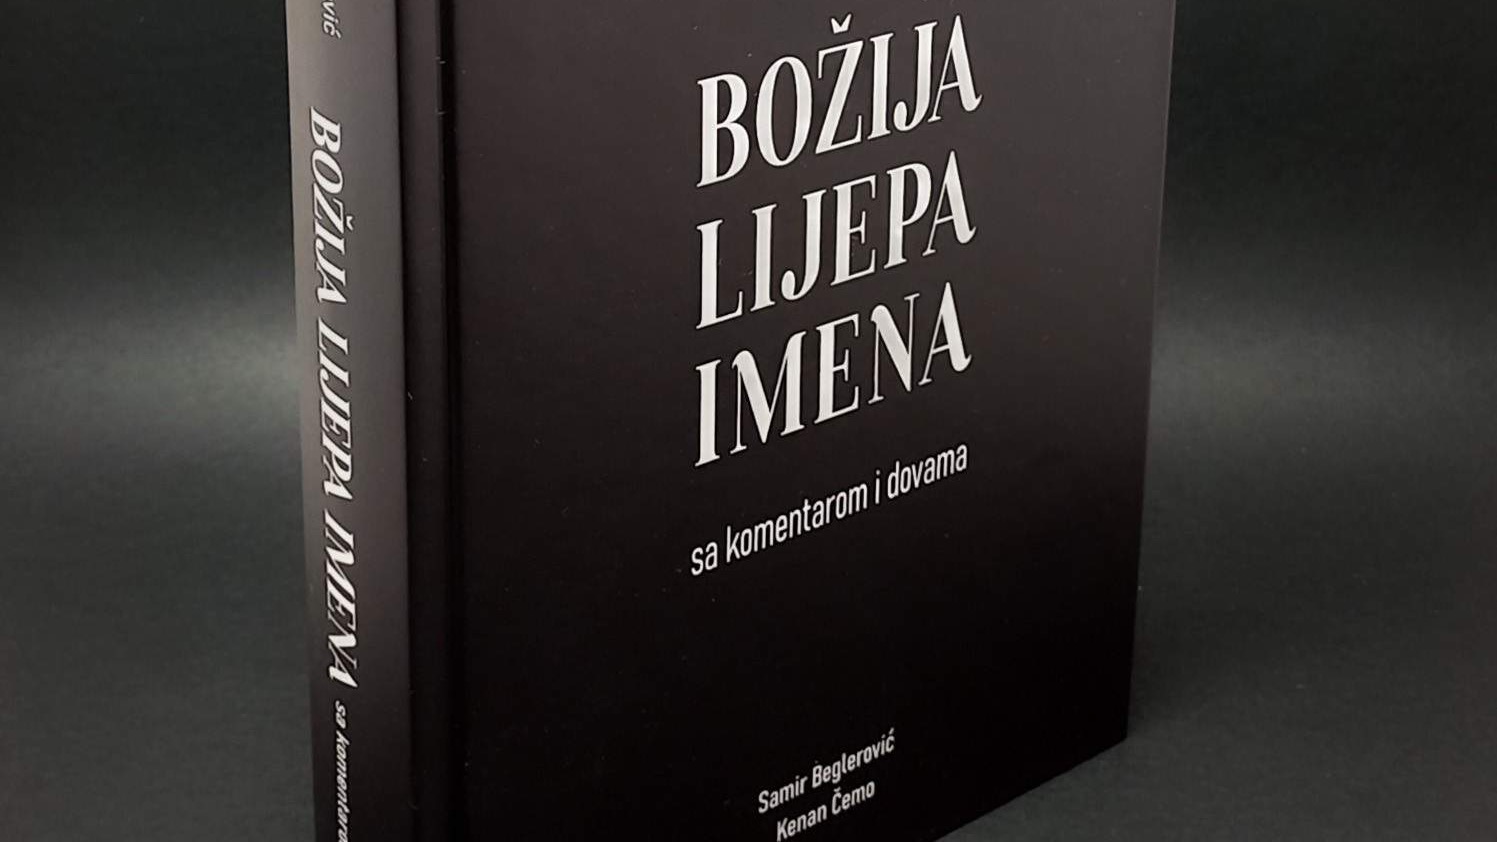 FIN: Publicirana nova knjiga rahmetli prof. Samira Beglerovića u koautorstvu sa Kenanom Čemom